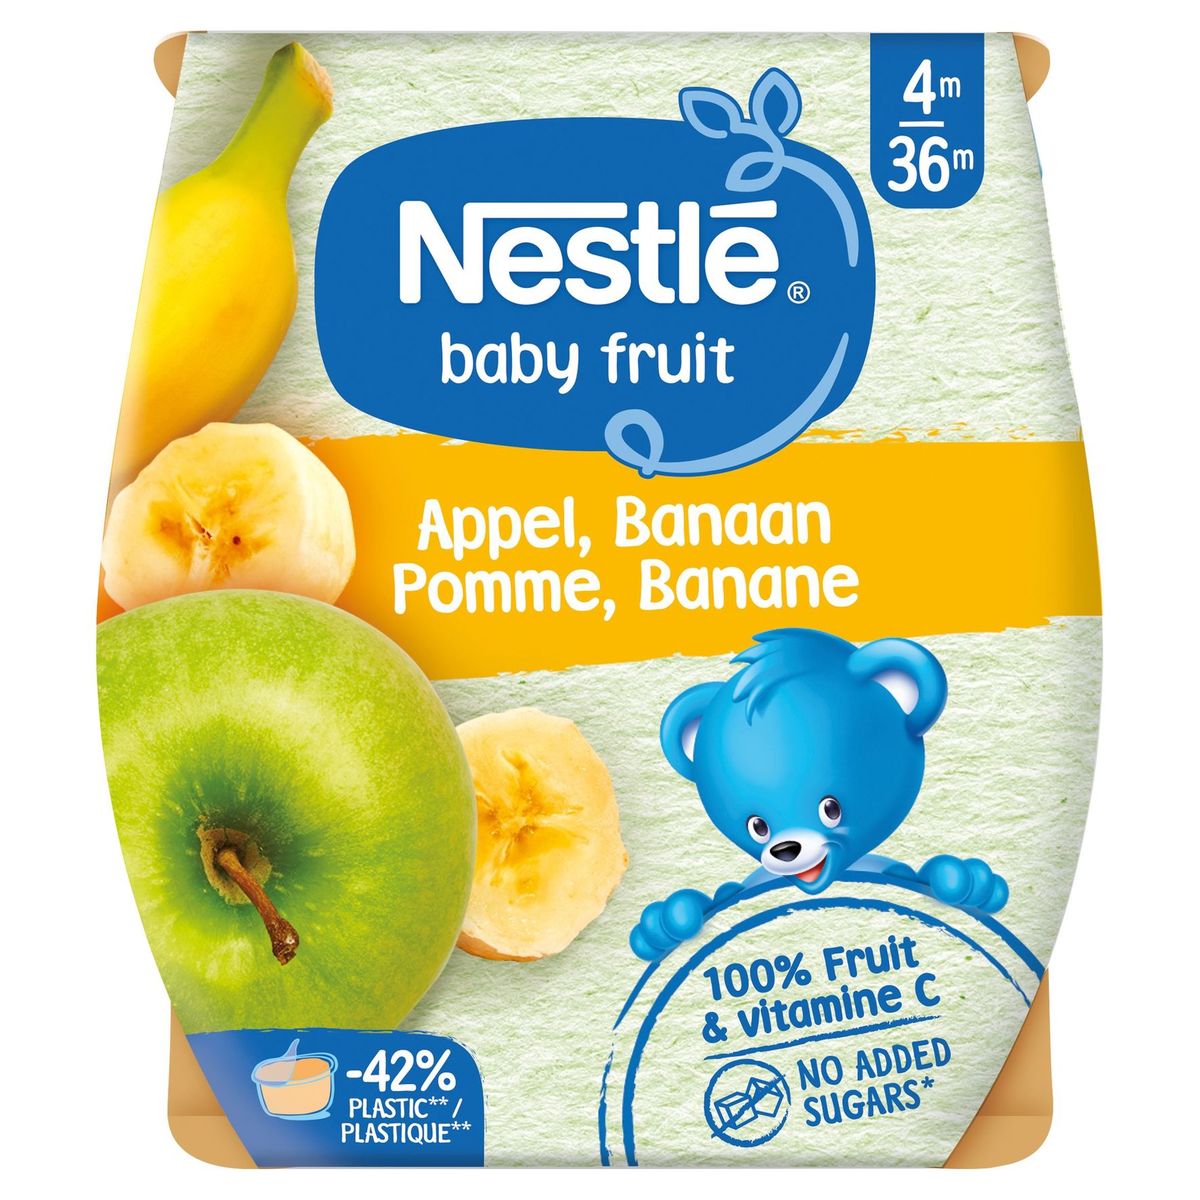 Nestlé Baby Fruit Appel Banaan vanaf 4 maanden 2x130g